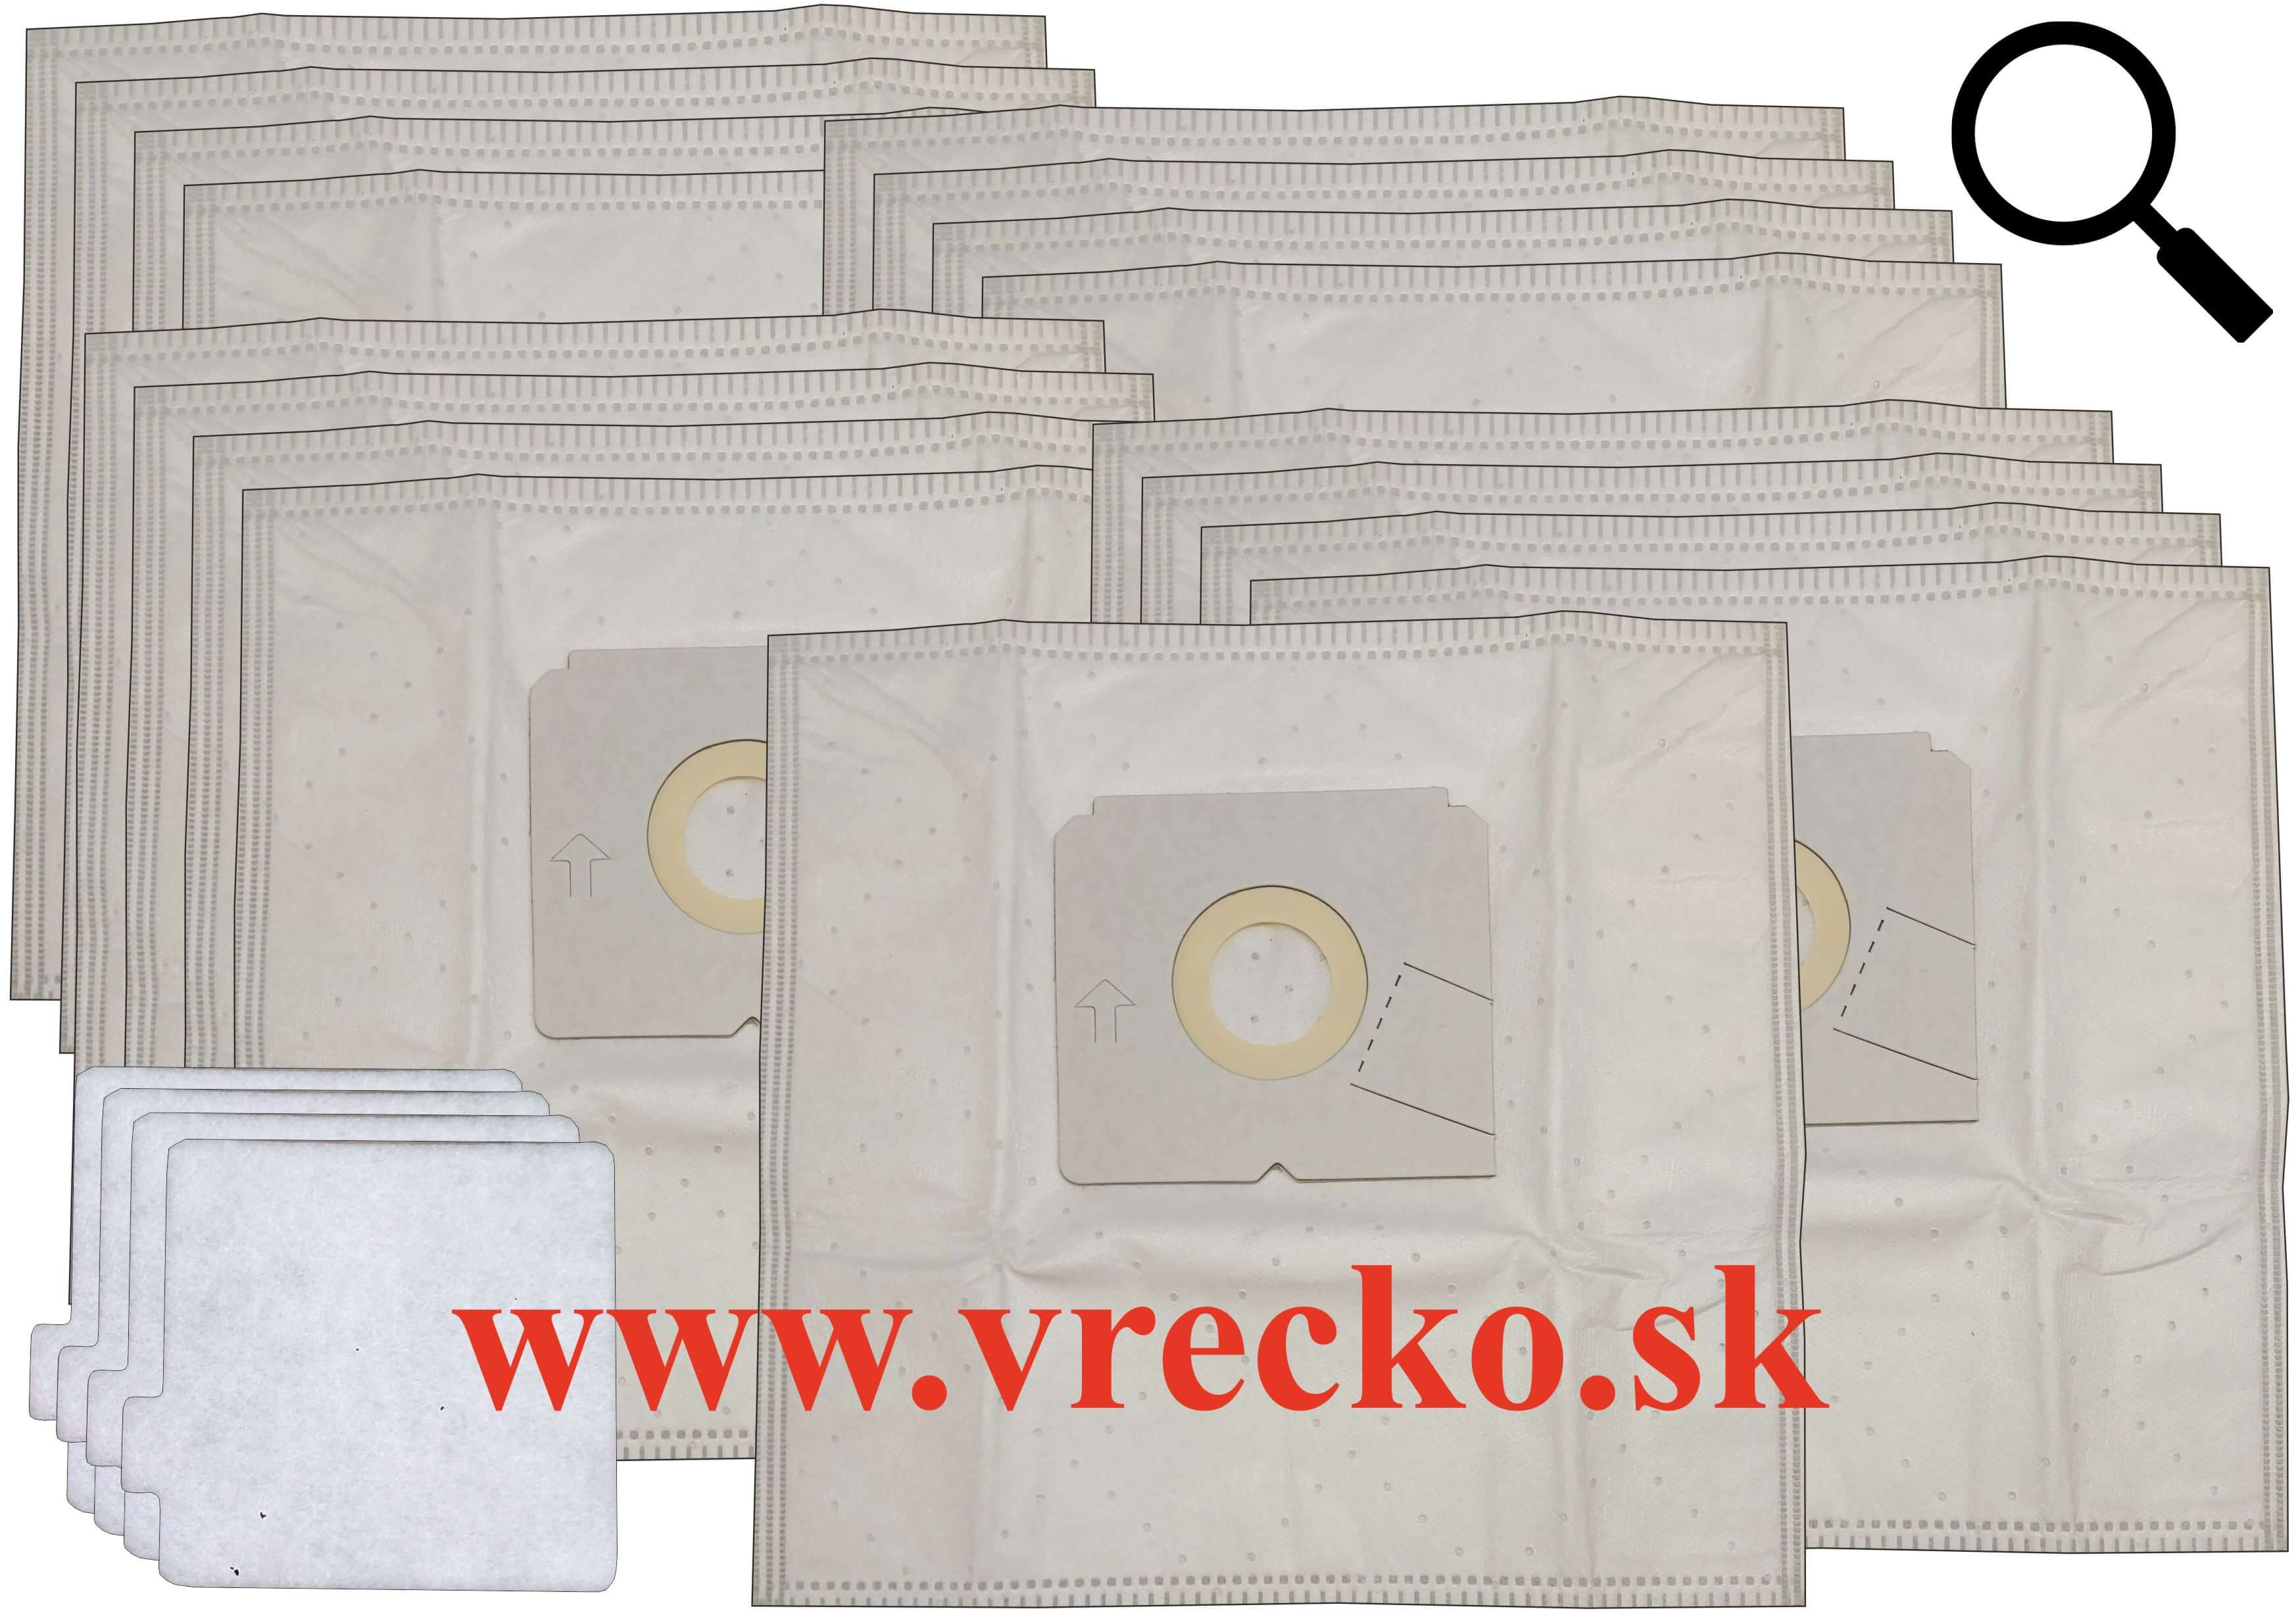 Electrolux 61 EKS 01 - Textilné vrecká do vysávača XXL vo zvýhodnenom balení s dopravou zdarma (17ks)